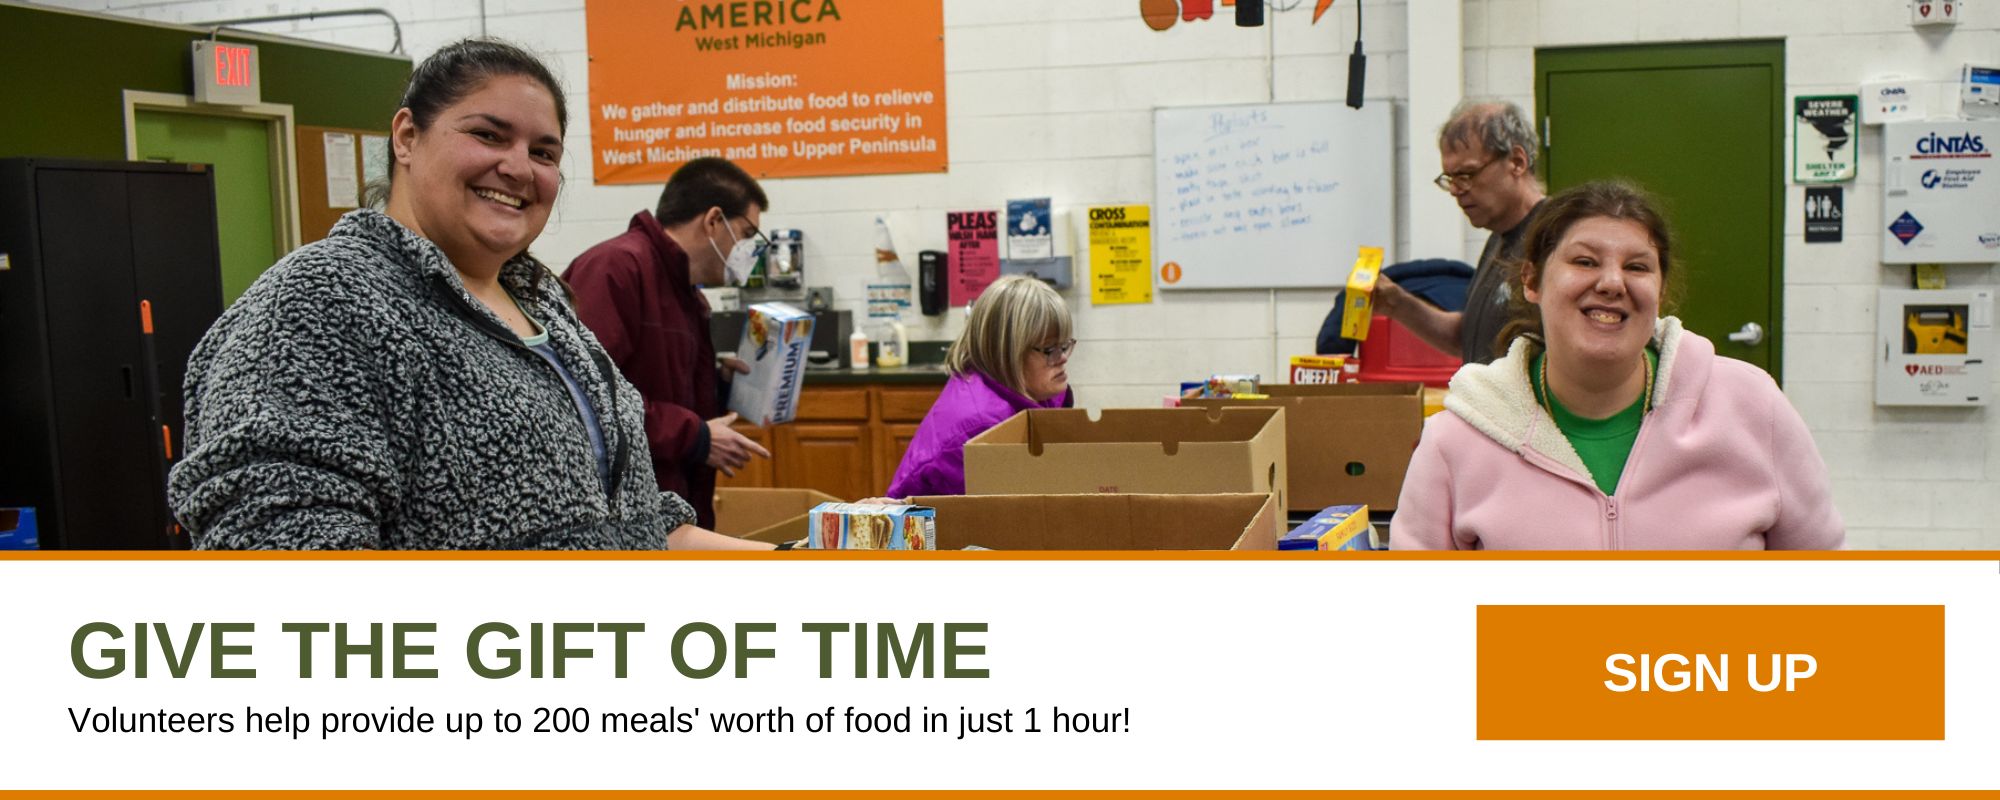 Dê o presente do tempo. Os voluntários ajudam a fornecer até 200 refeições em apenas 1 hora! Inscrever-se